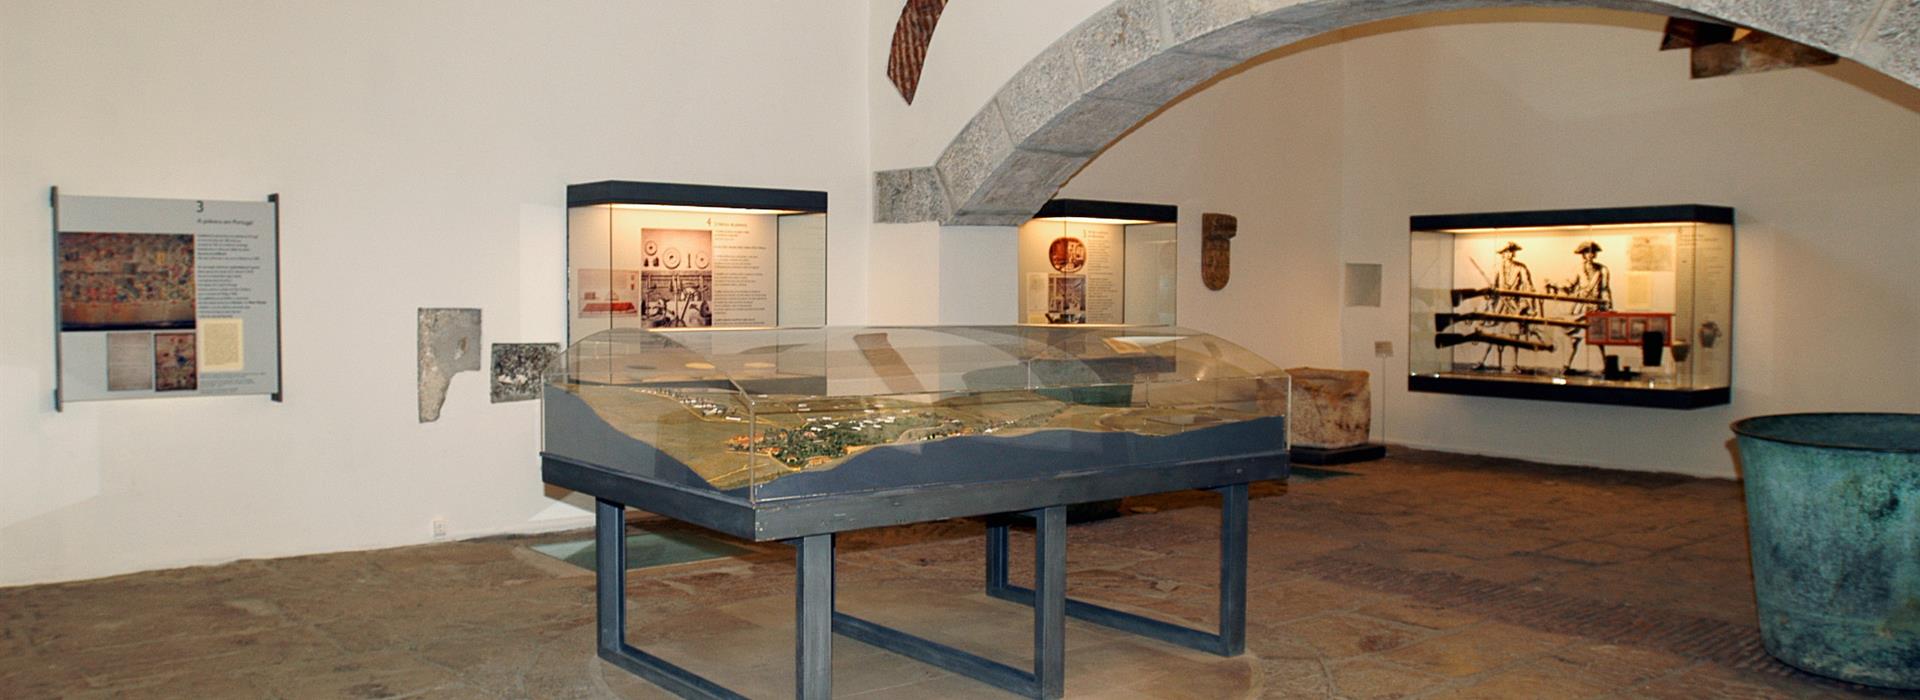 Museu da Plvora Negra em Oeiras